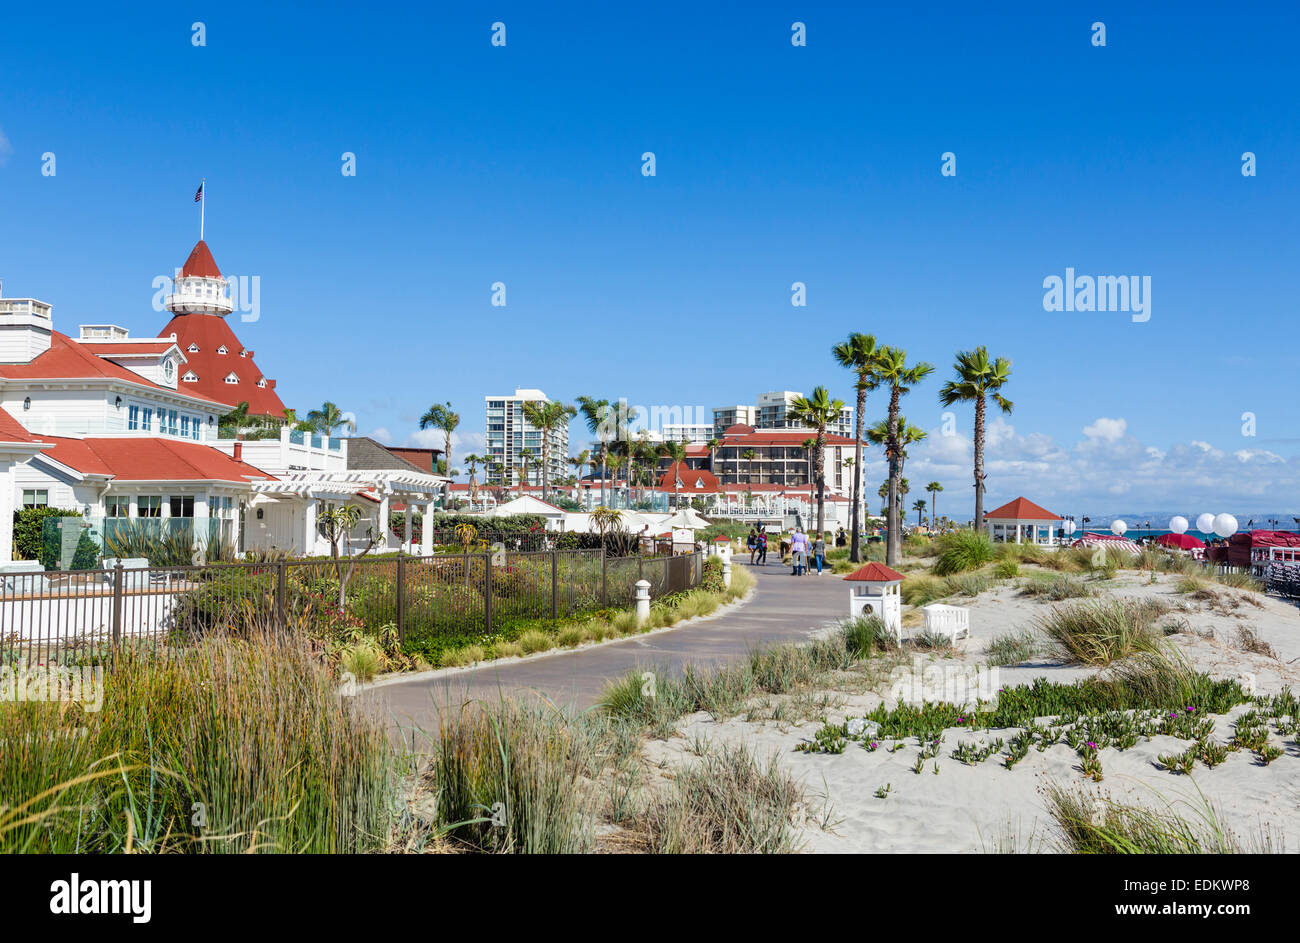 El Hotel del Coronado de la playa, Playa Coronado, San Diego, California, EE.UU. Foto de stock